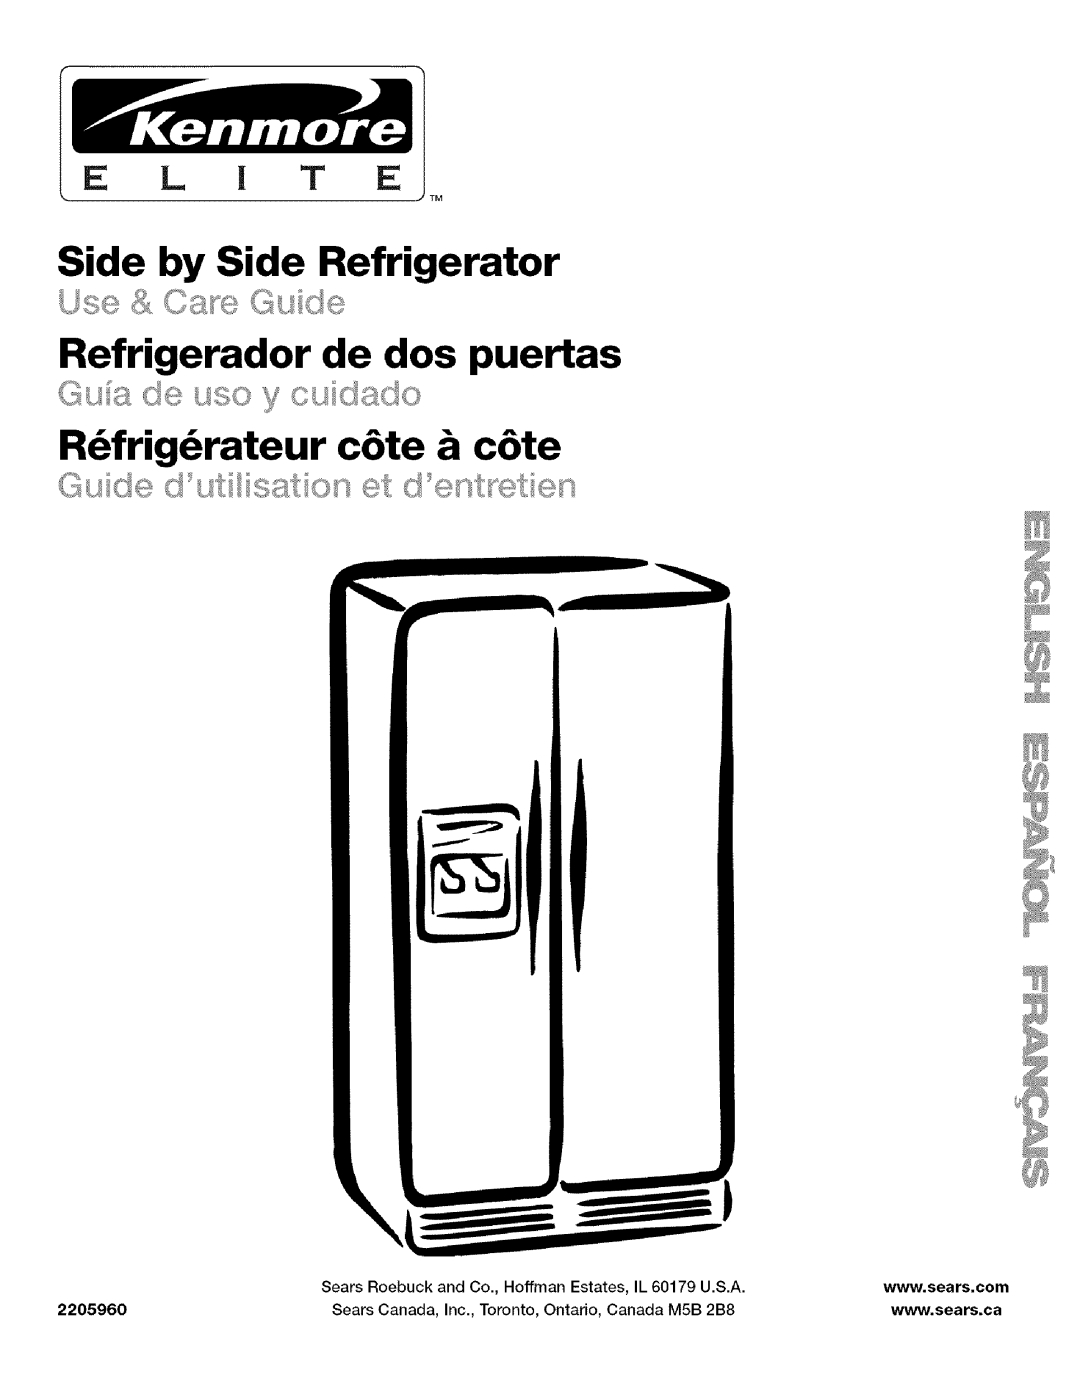 Kenmore 2205960 manual Side by Side Refrigerator, Refrigerador de dos puertas, R_frig_rateur c6te & c6te, E L I T E 